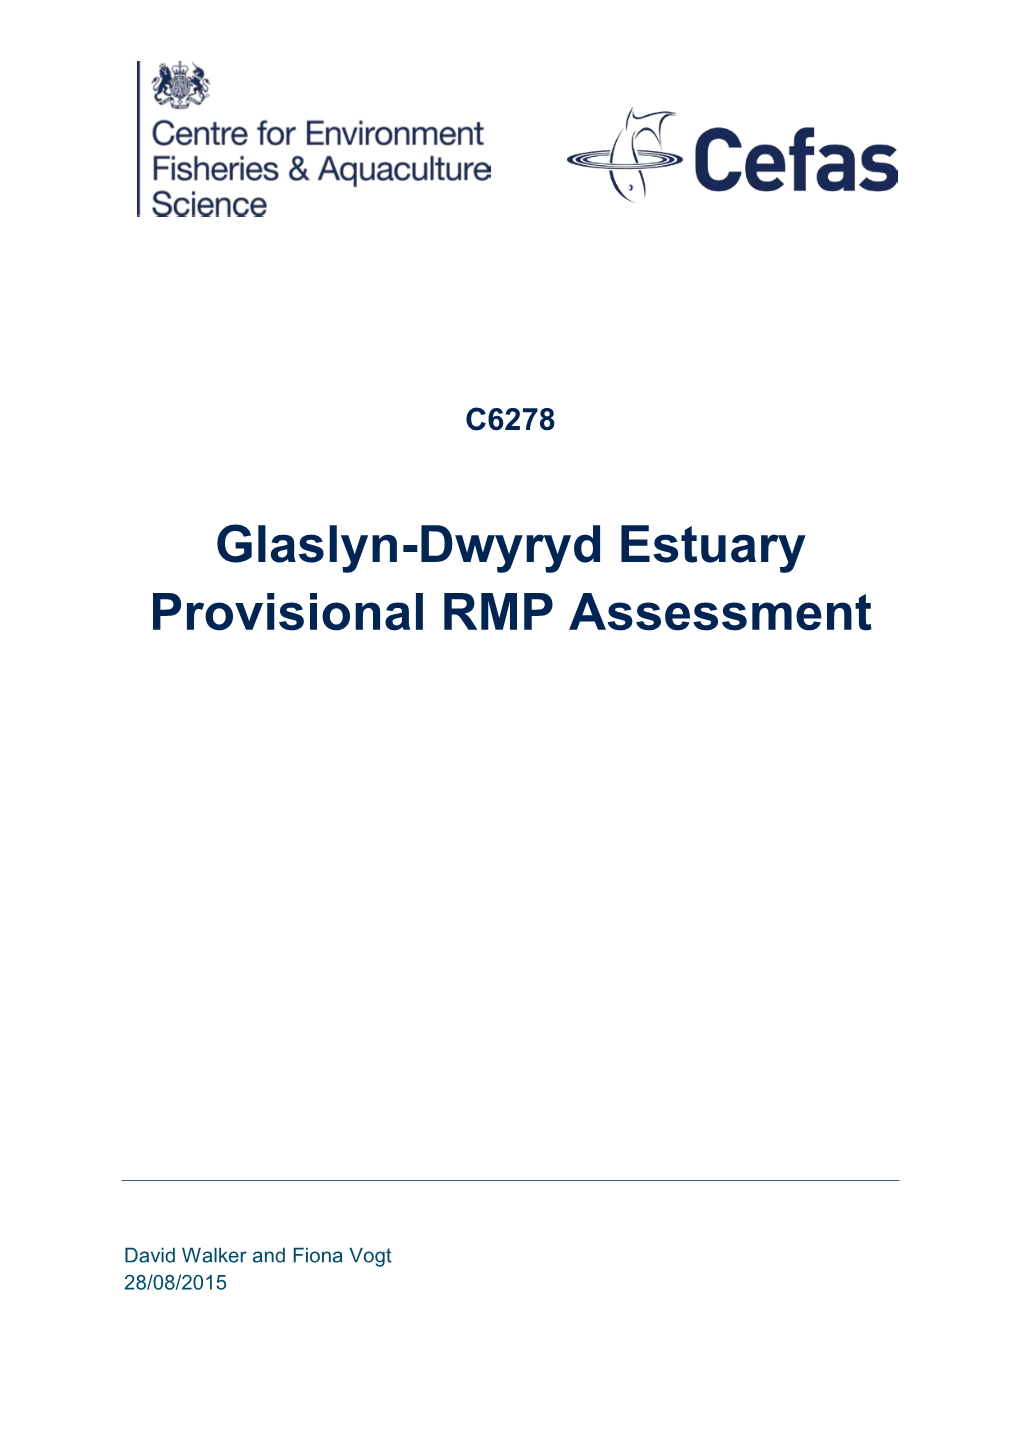 Glaslyn-Dwyryd Estuary Provisional RMP Assessment